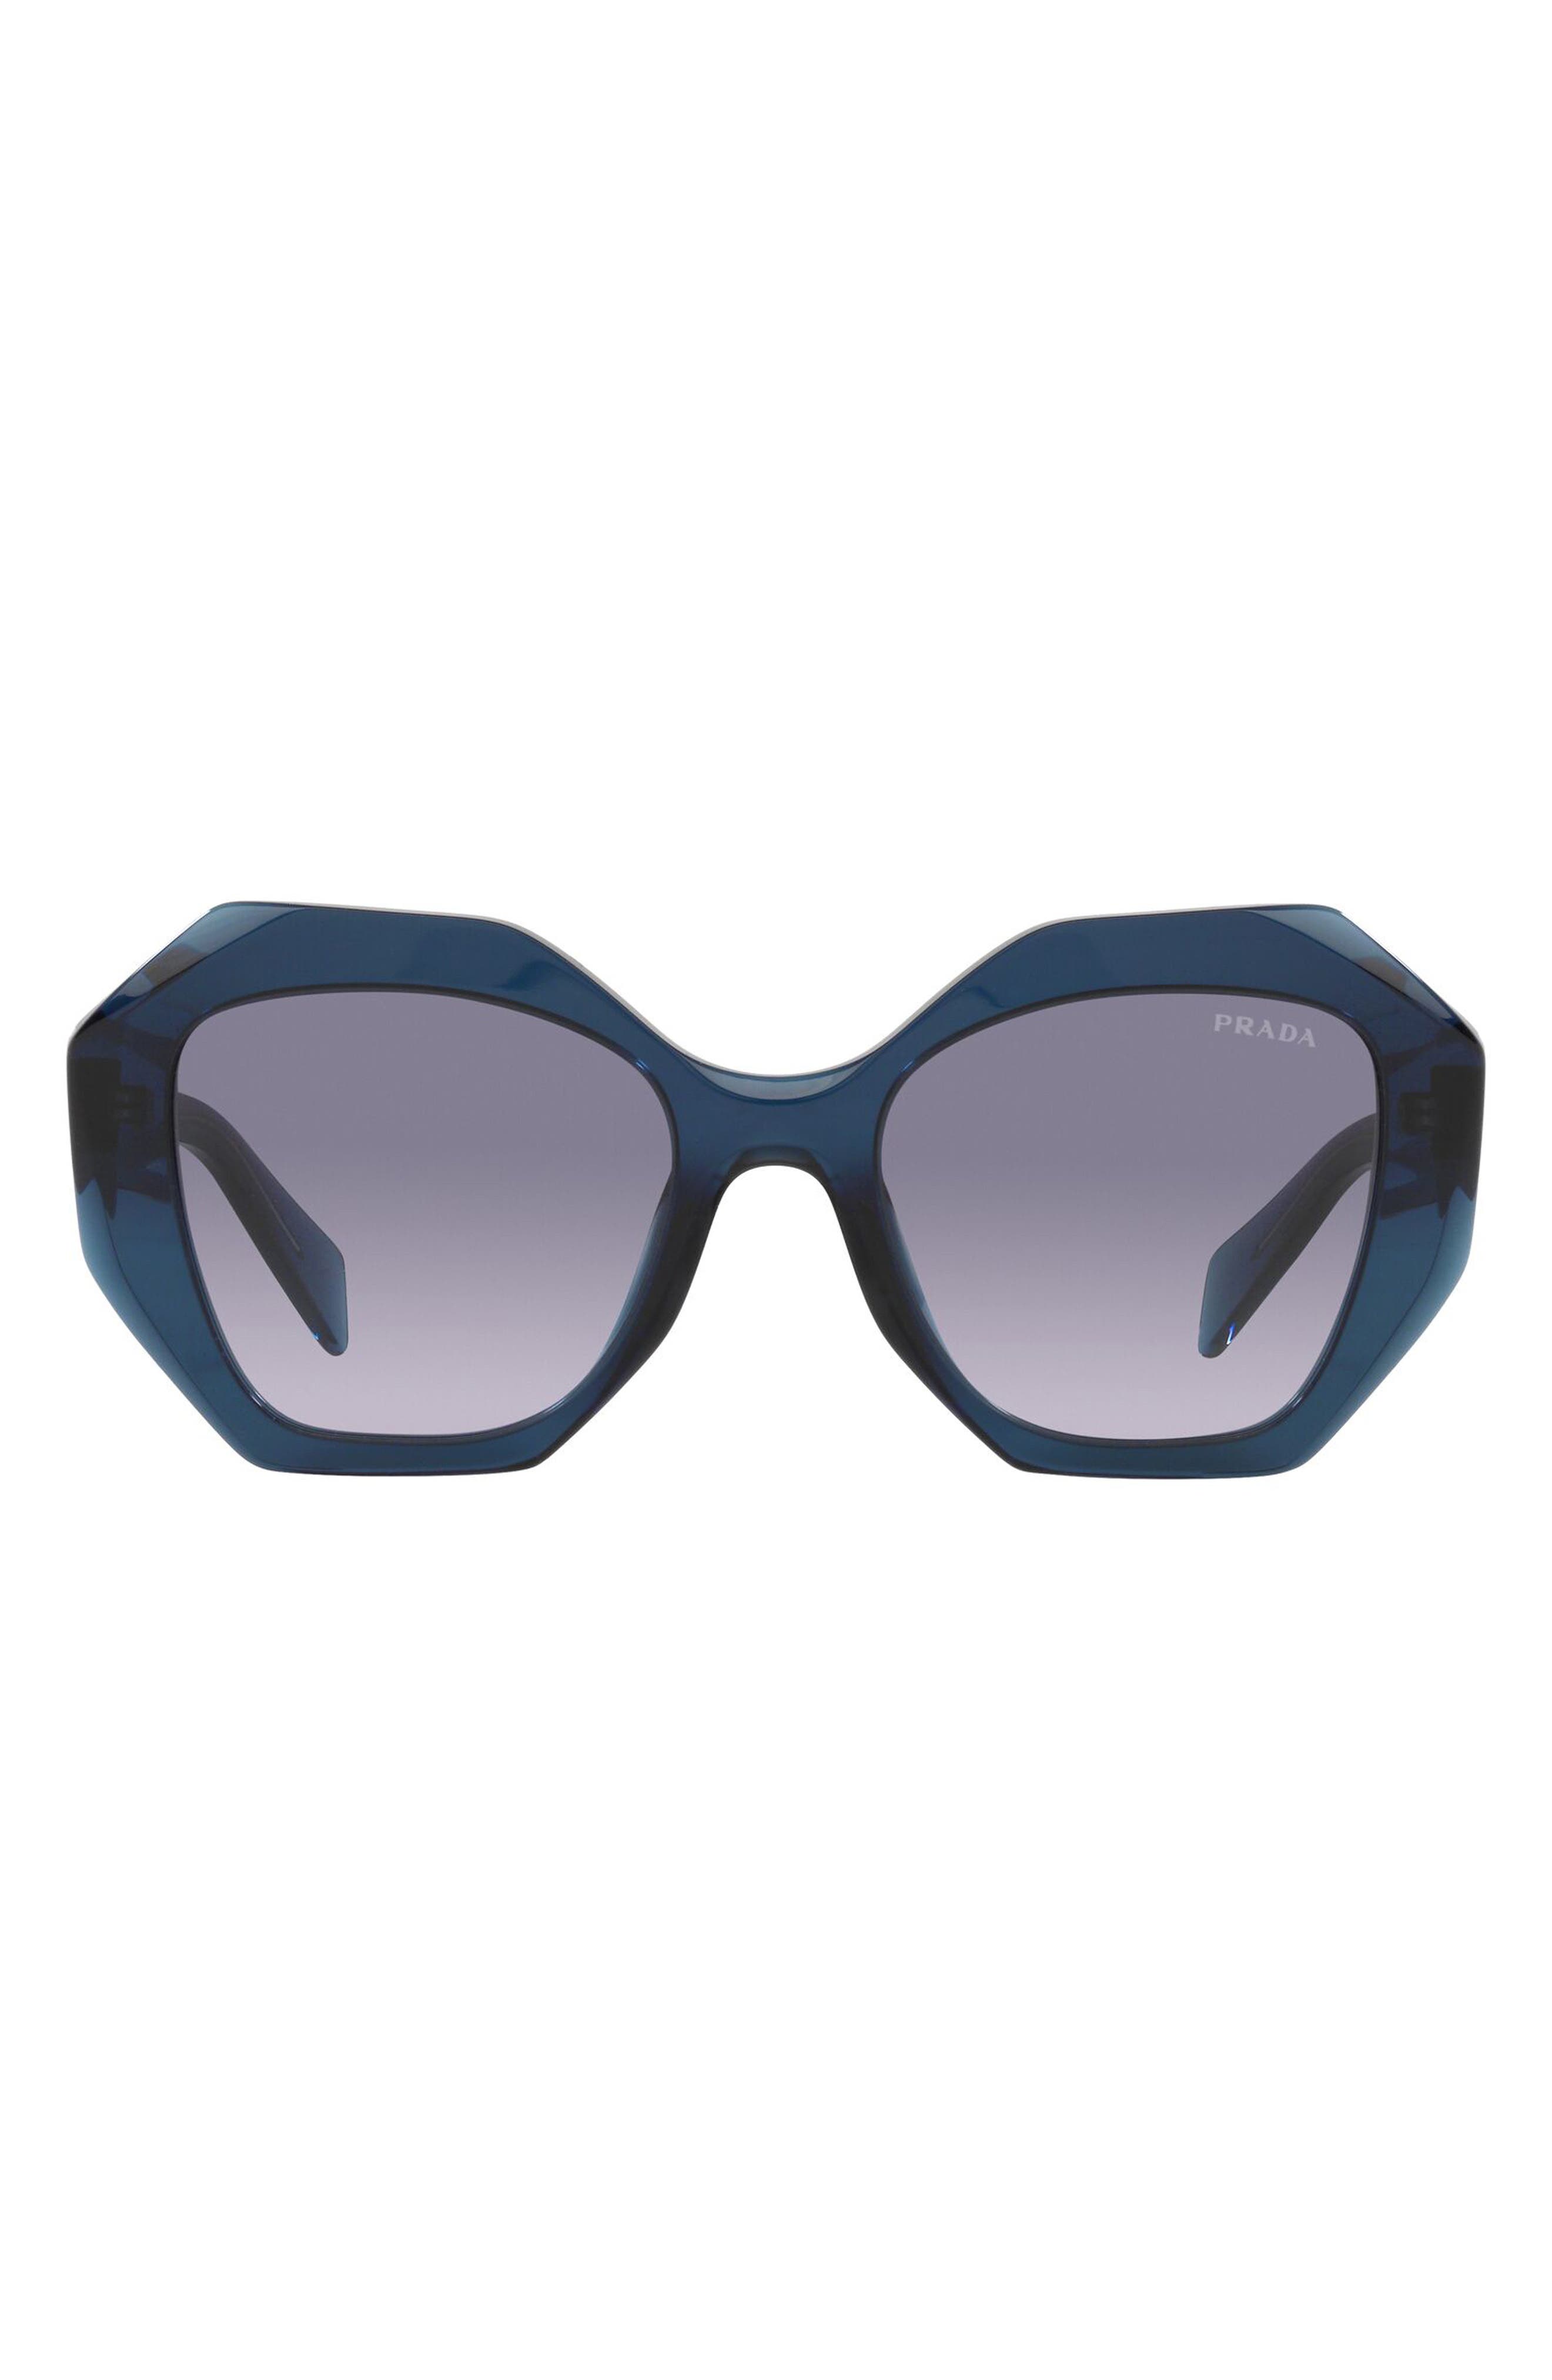 Prada 53mm Gradient Irregular Sunglasses in Blue /Light Violet Gr Blue